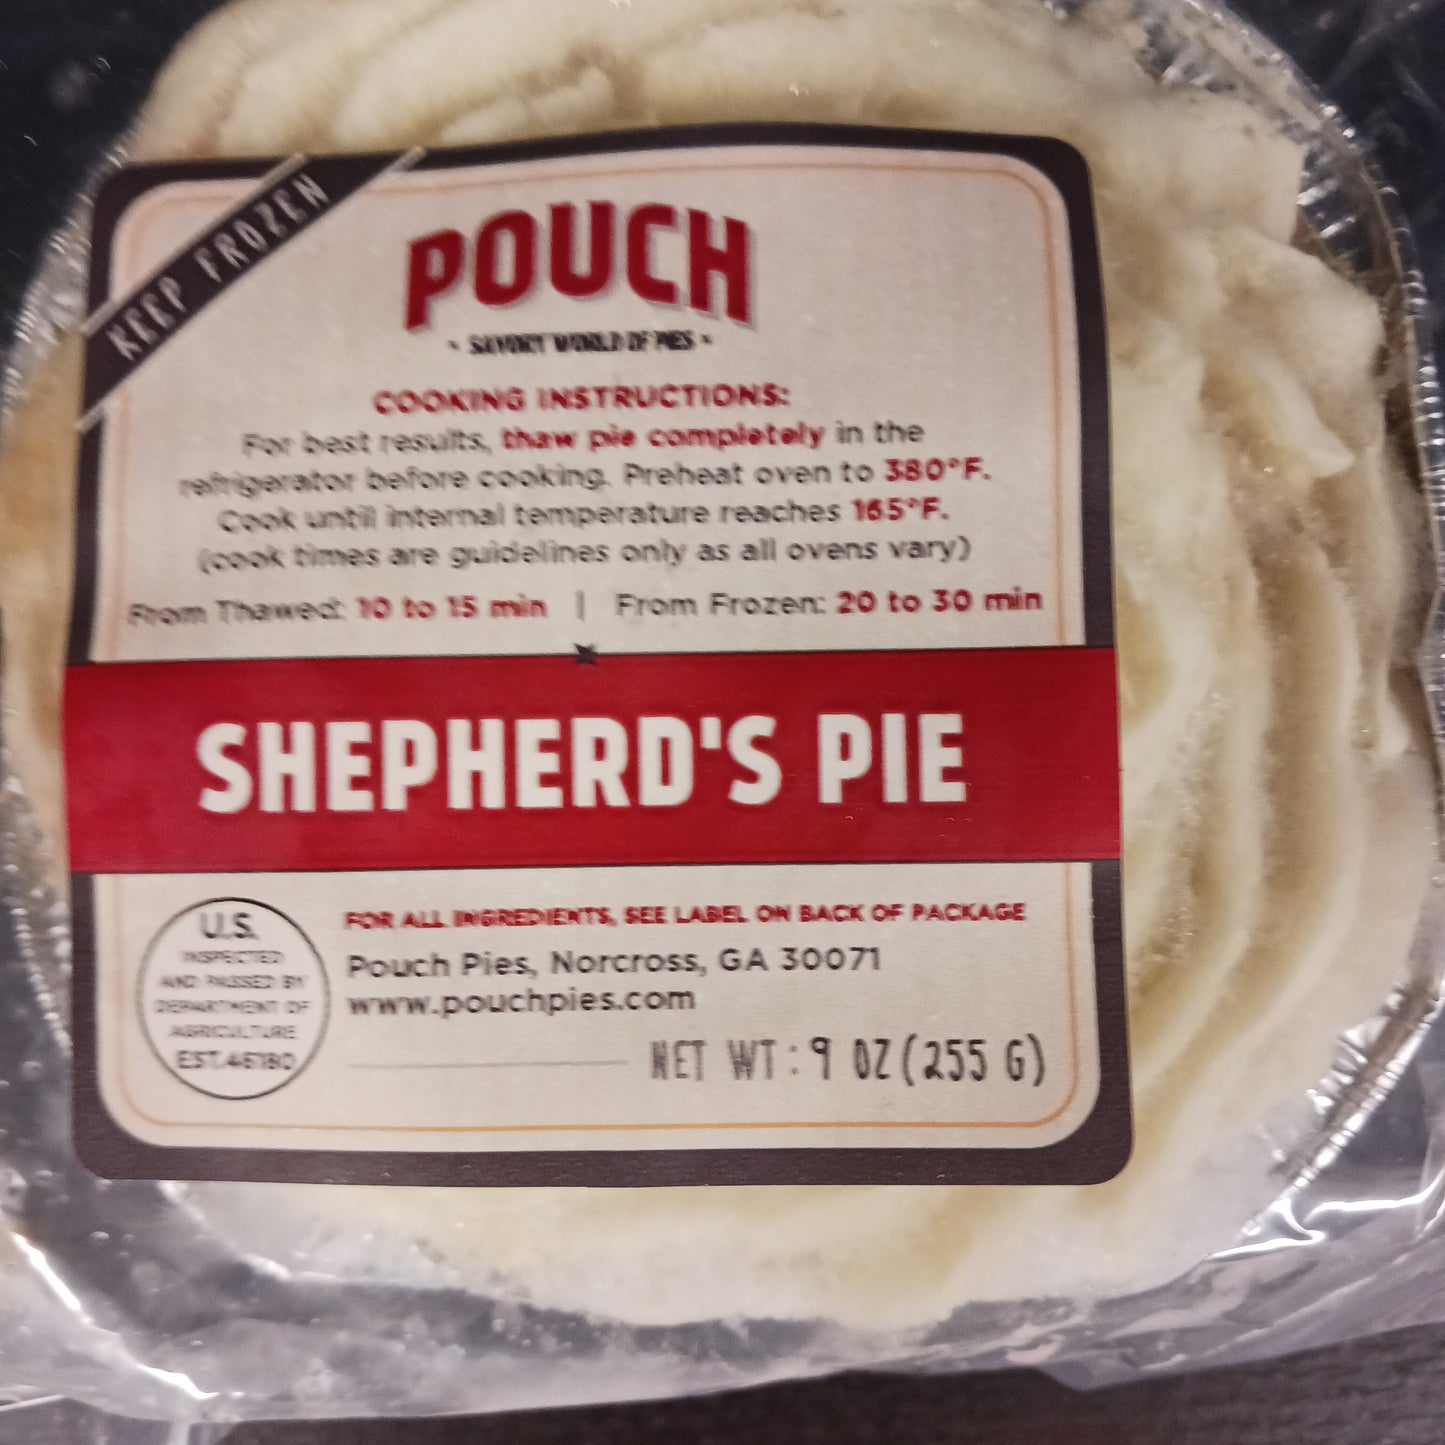 Pouch Pies: Shepherd's Pie 9oz